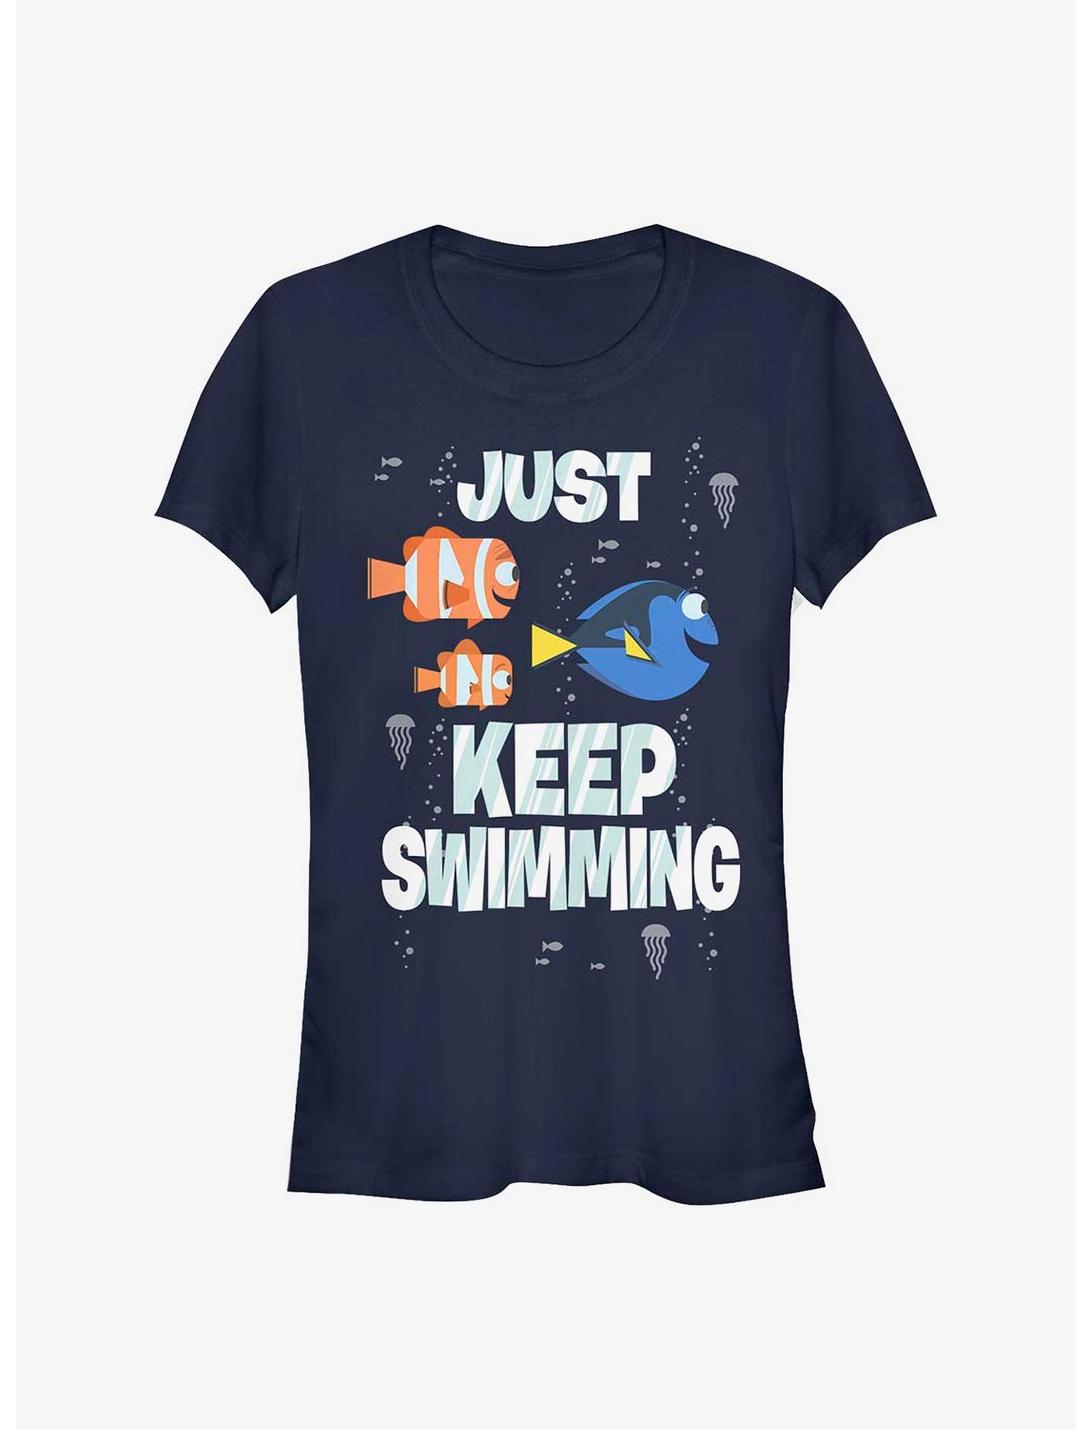 Disney Pixar Finding Nemo Just Keep Swimming Girls T-Shirt, NAVY, hi-res